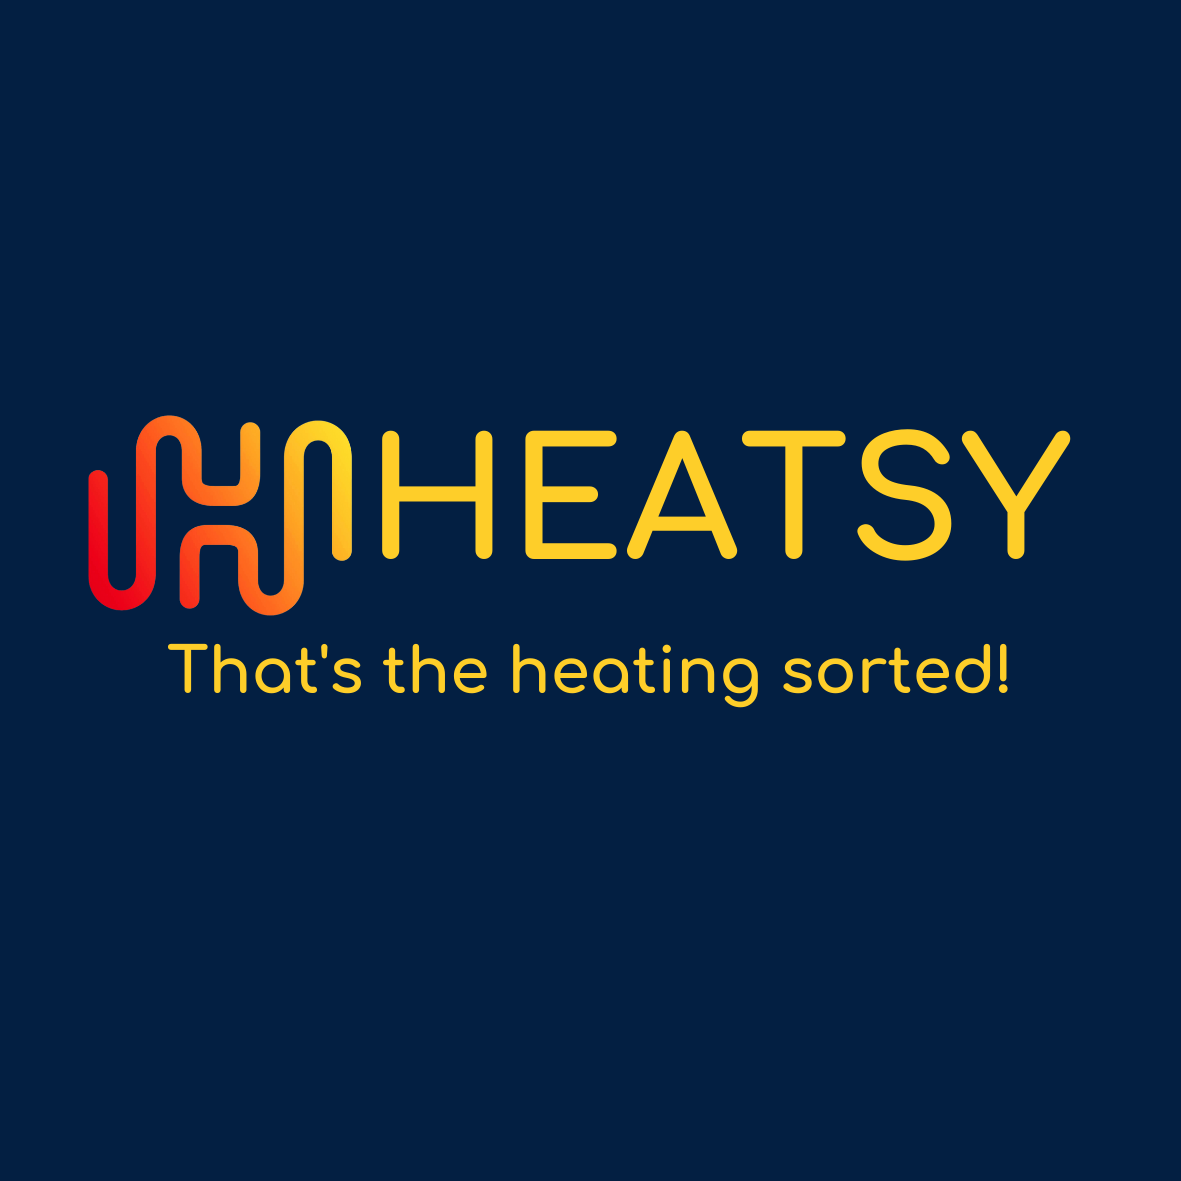 Heatsy Ltd